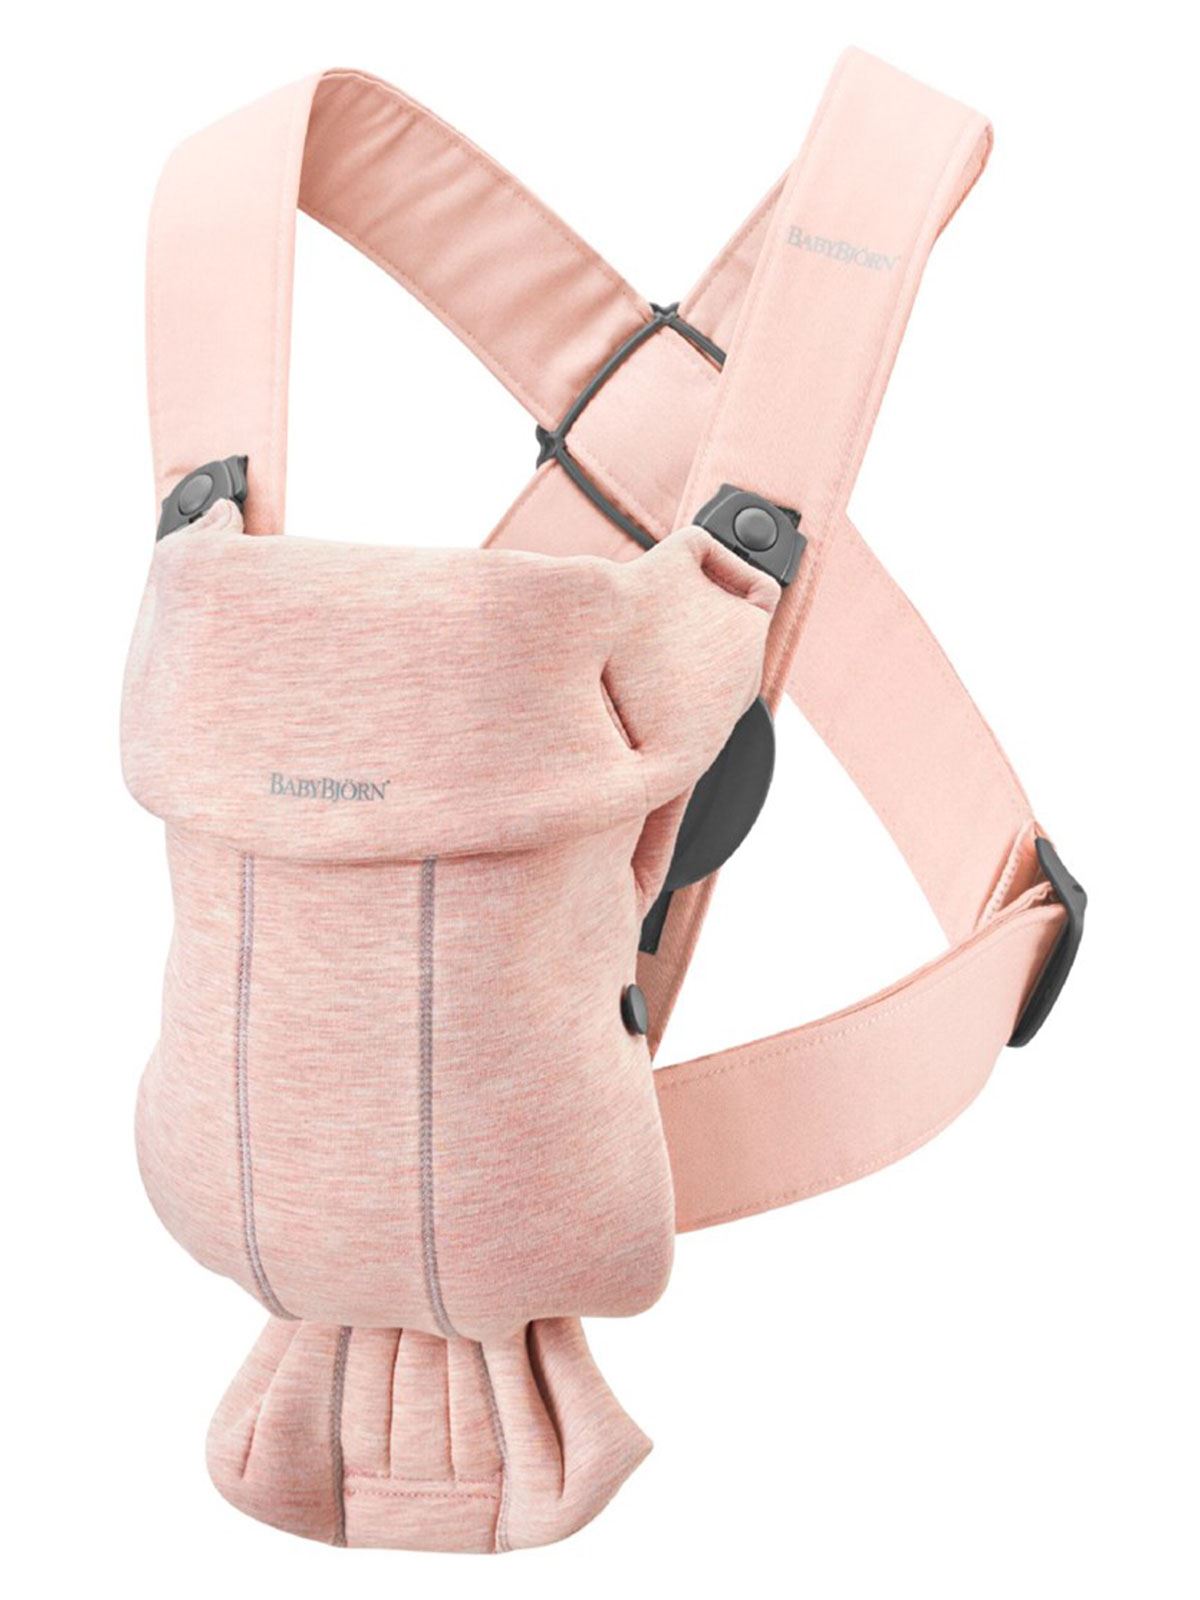 BabyBjörn Kanguru Mini Cotton 3D Jersey / Light Pink